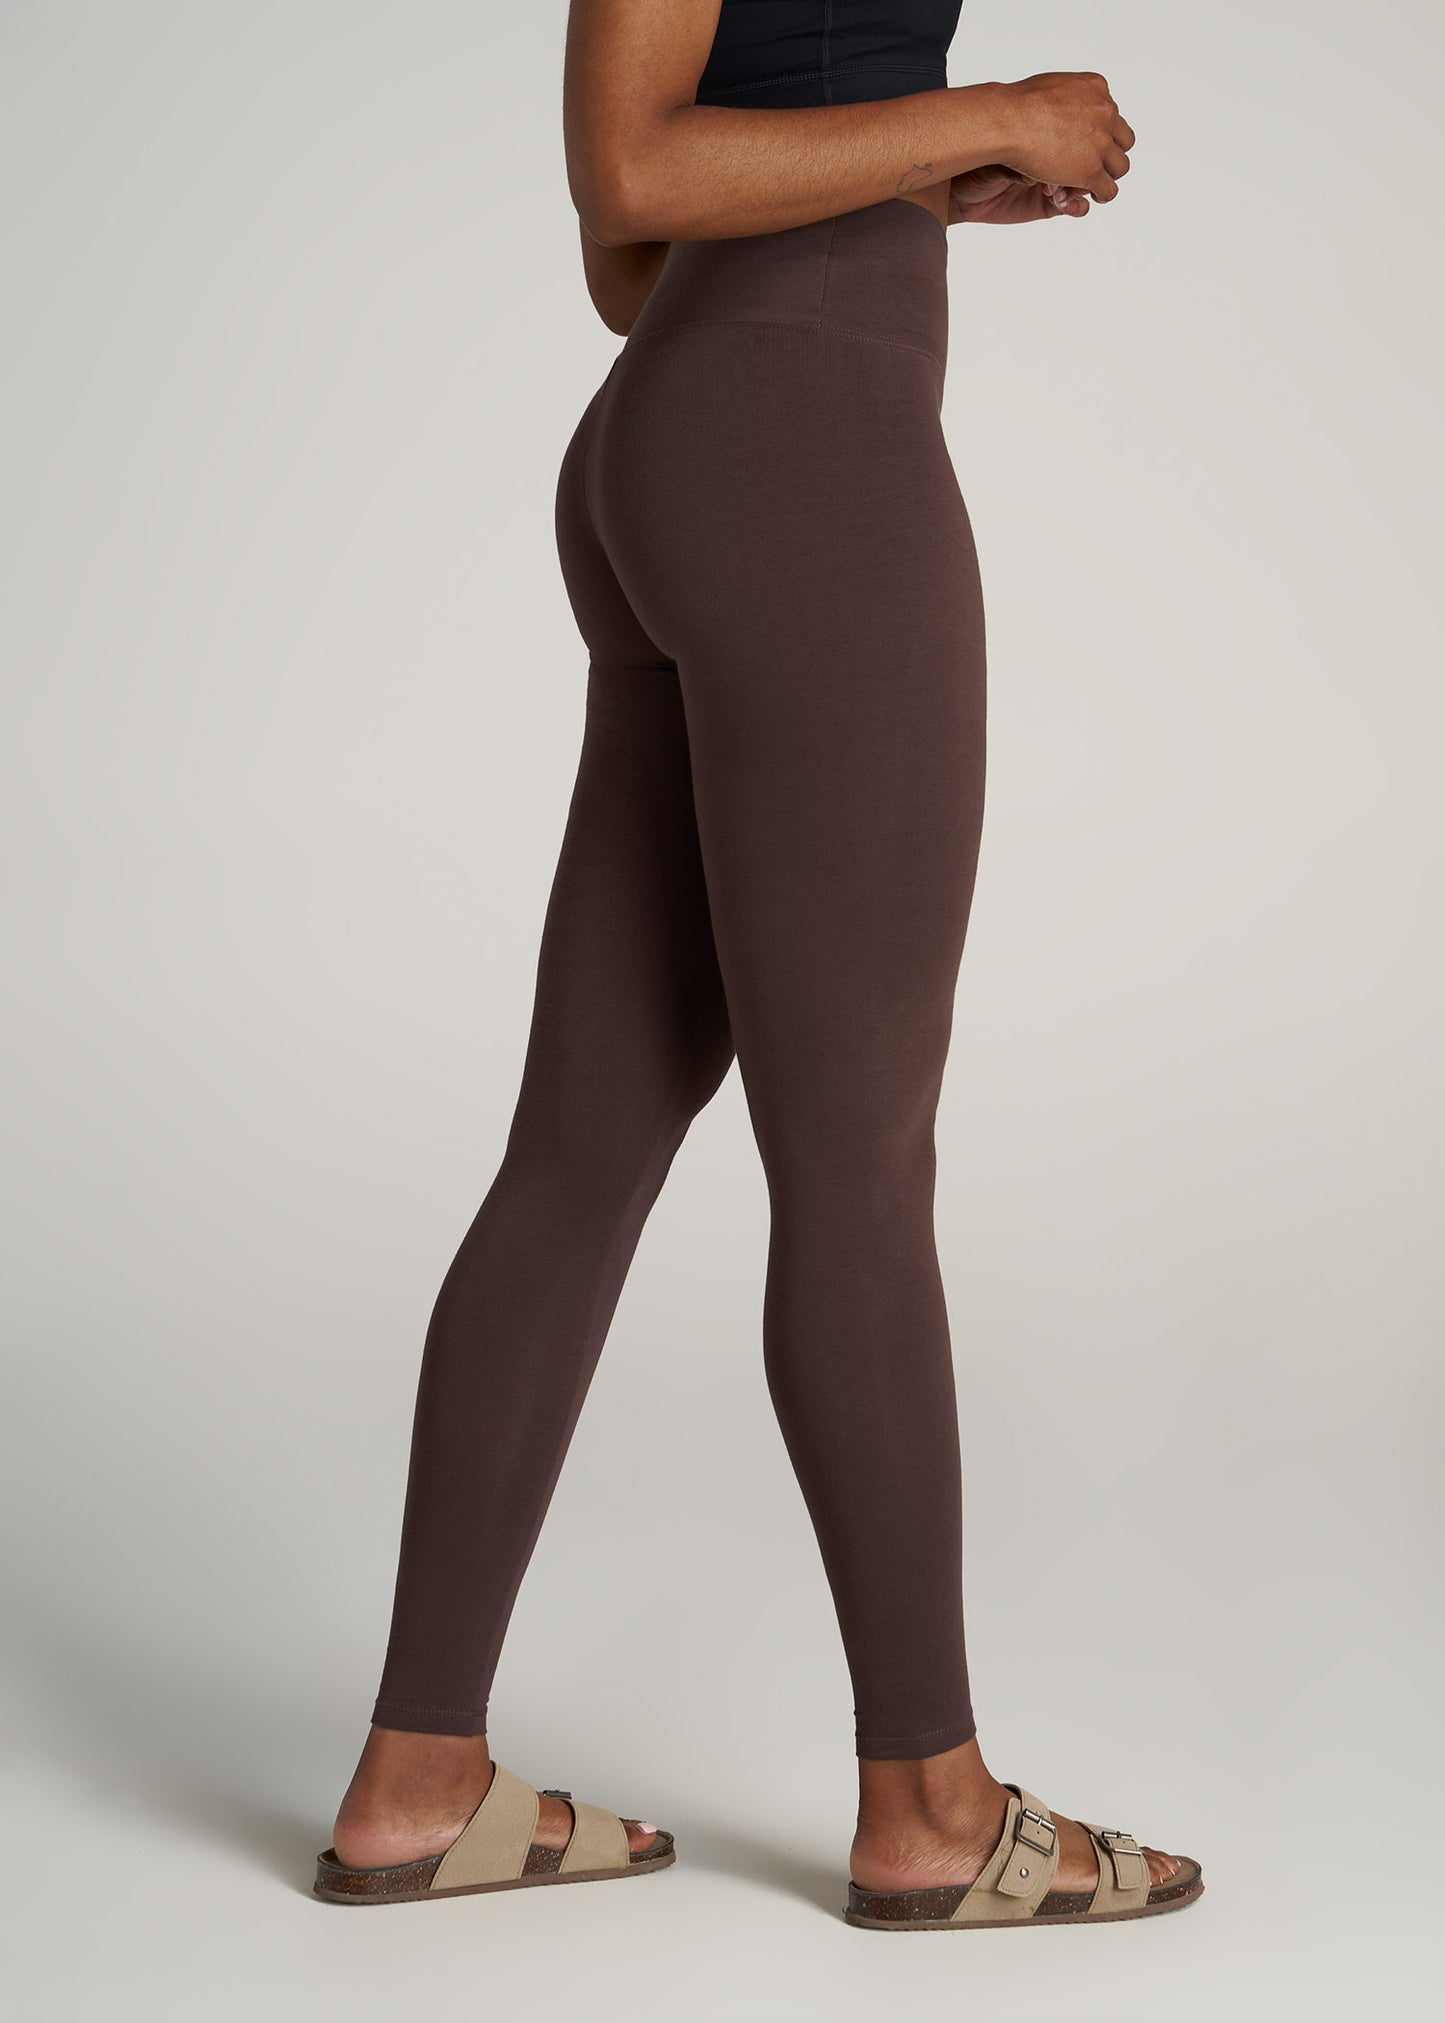 Chocolate Brown Lululemon Leggings Women's